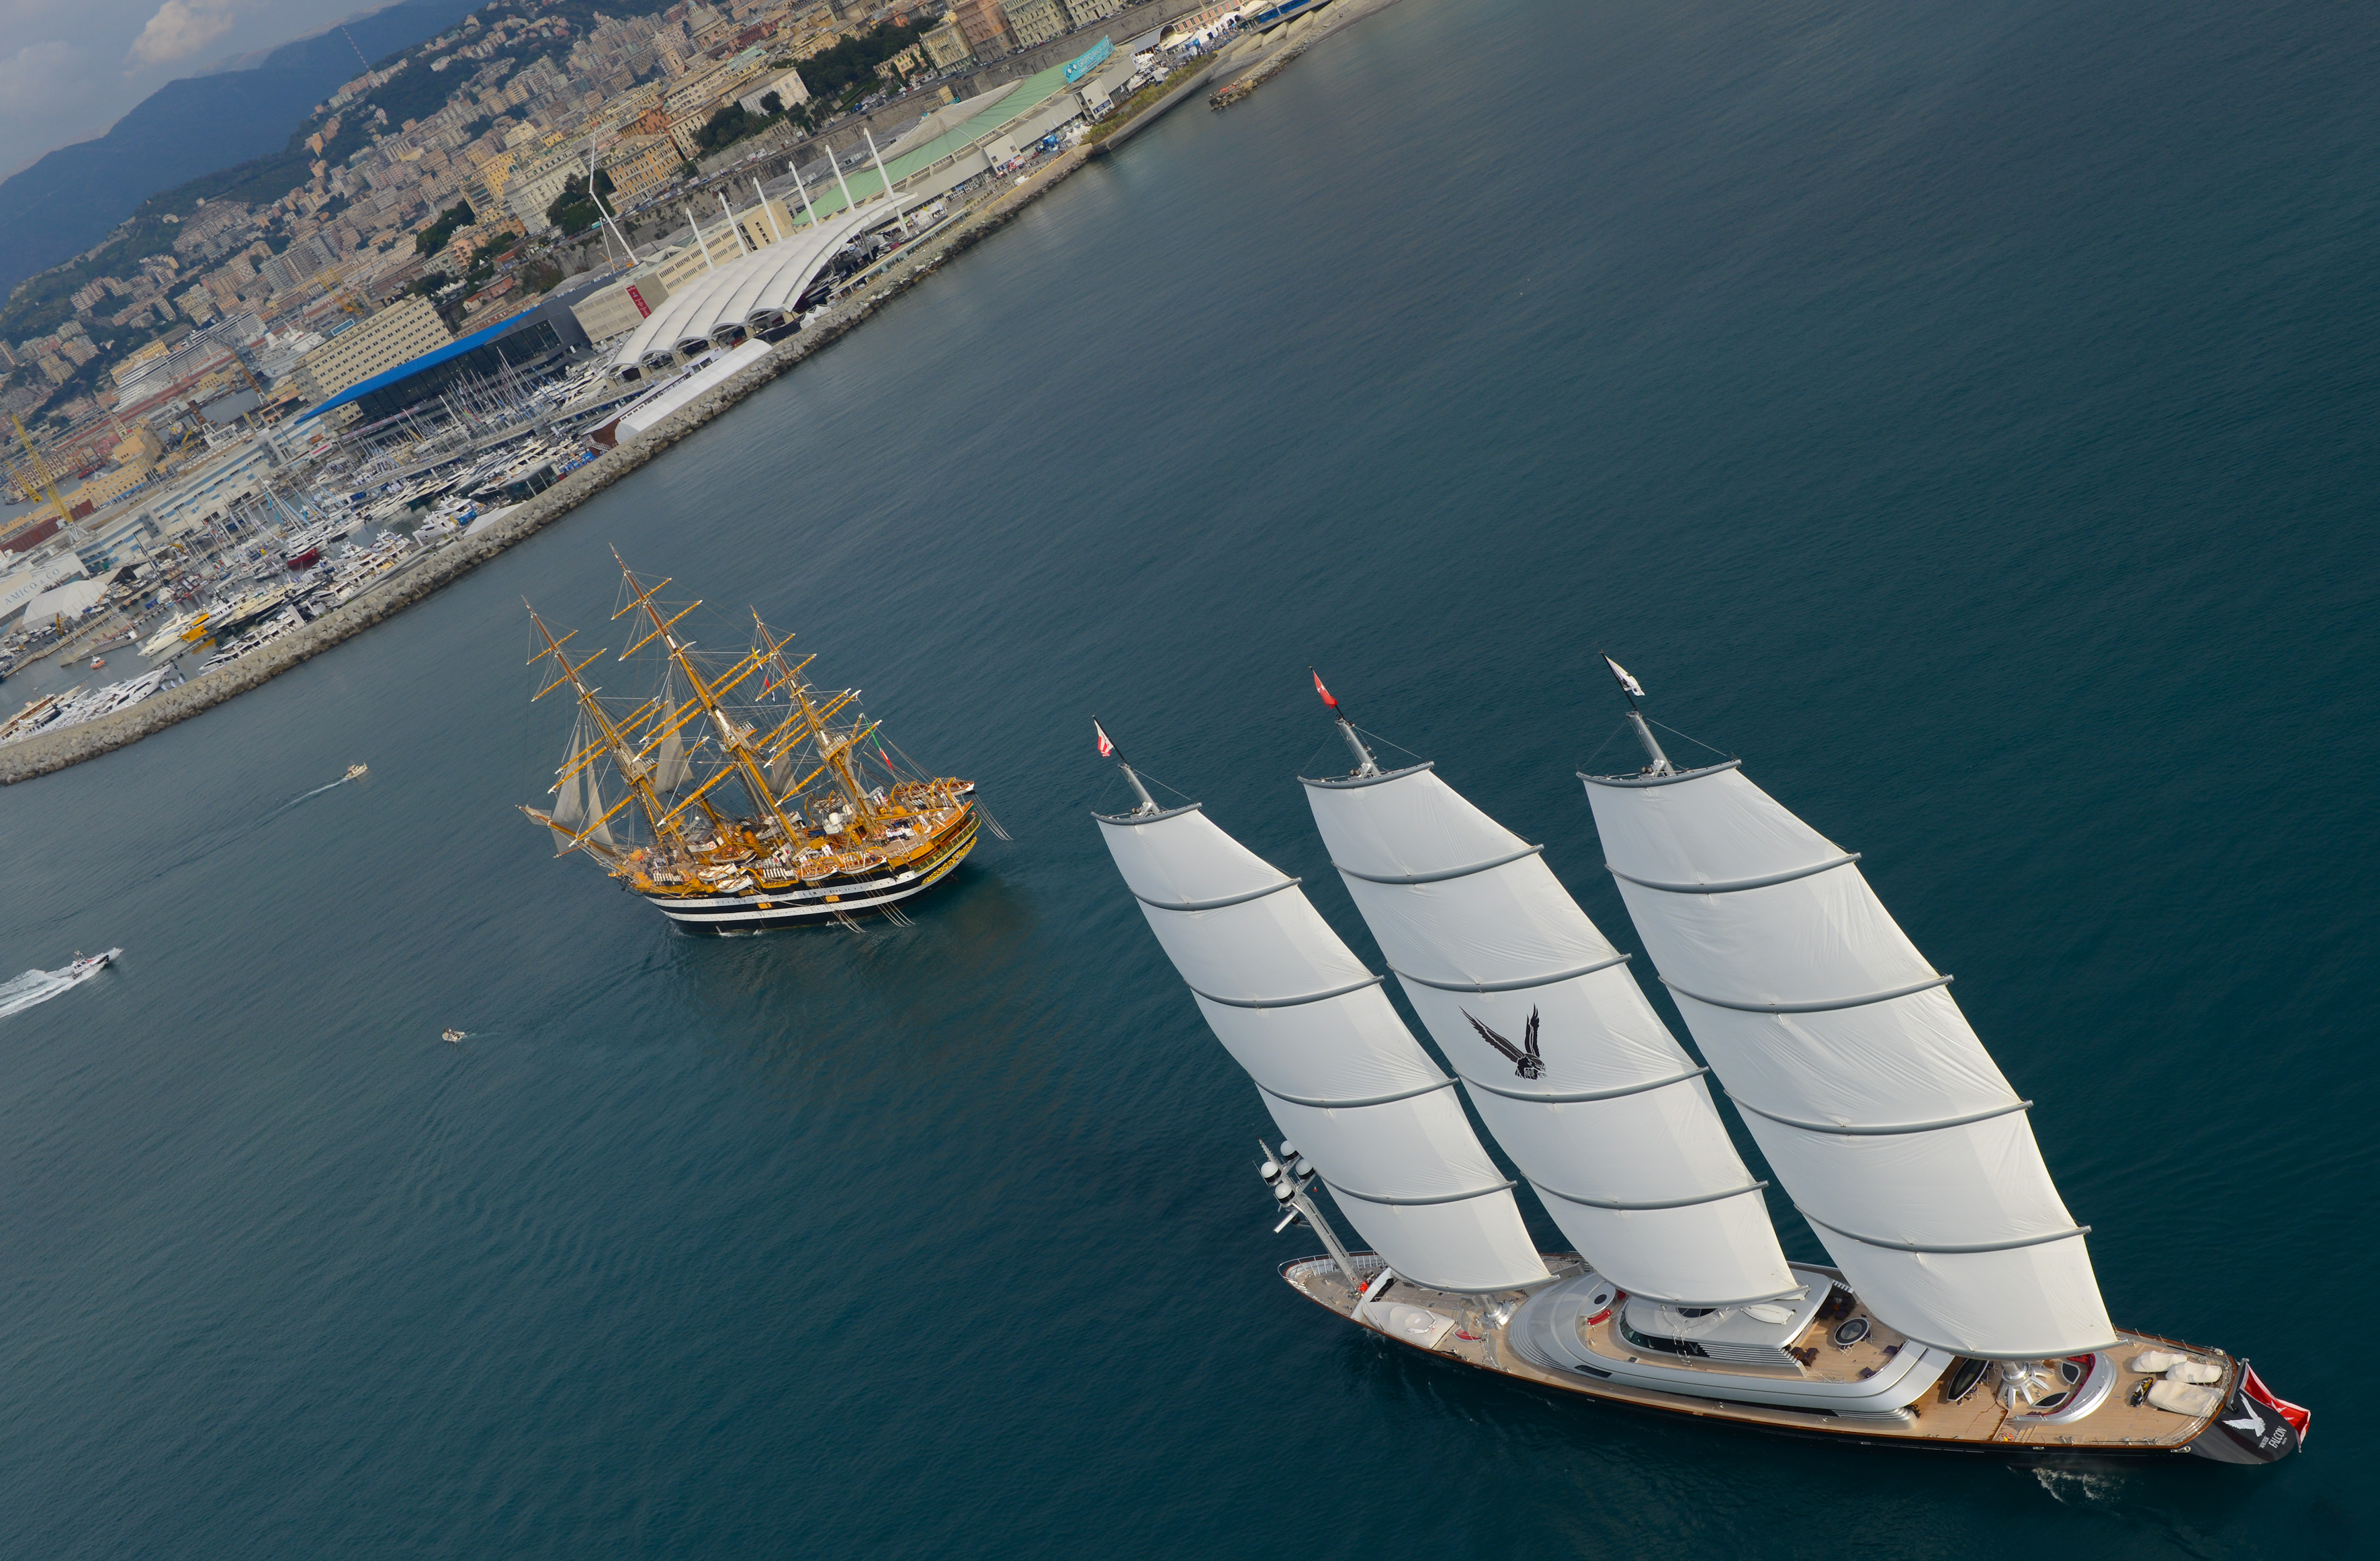 Maltese Falcon superyacht arriving to Genoa - Genoa Boat Show 2012 - Photo by Amerigo Vespucci